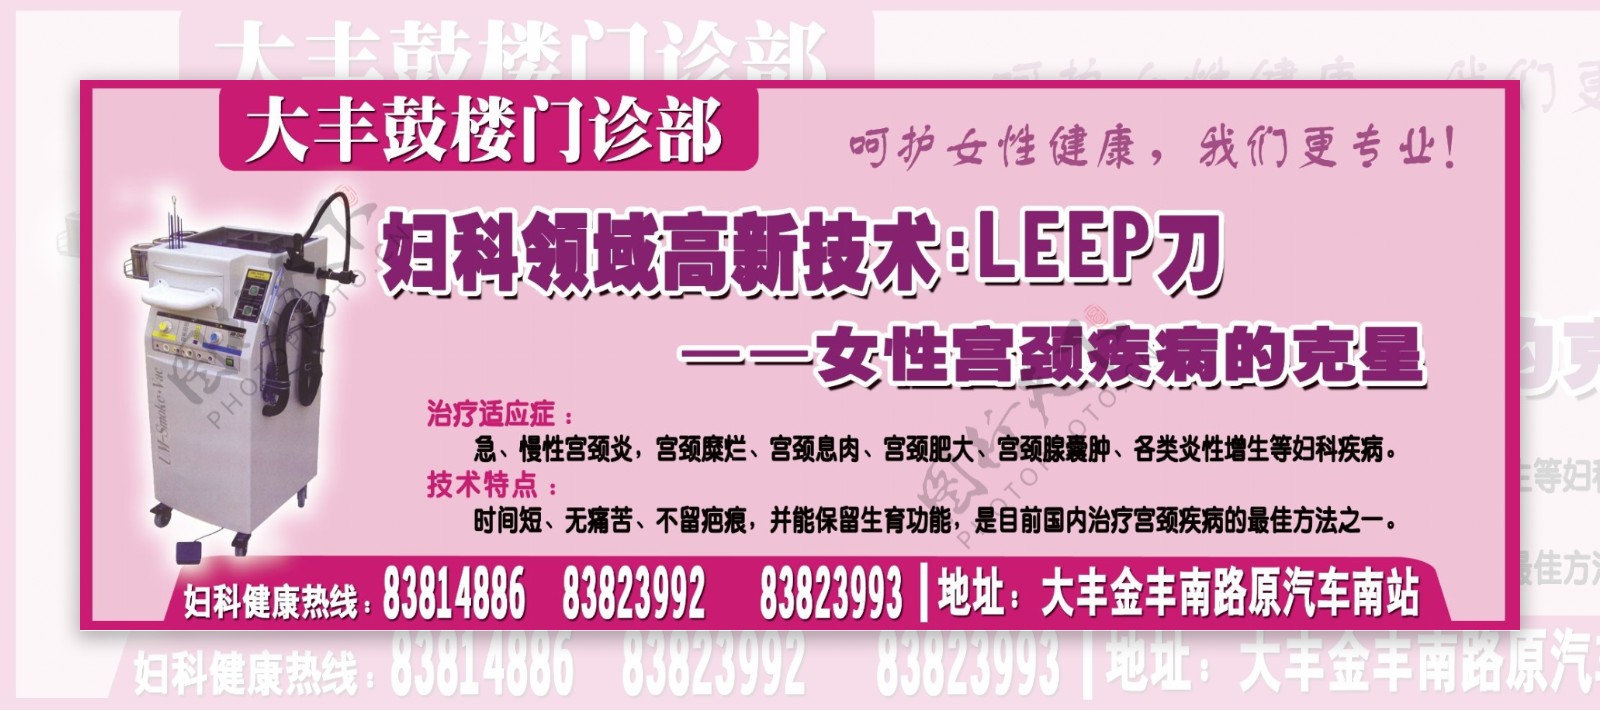 妇科领域高新技术LEEP刀广告图片